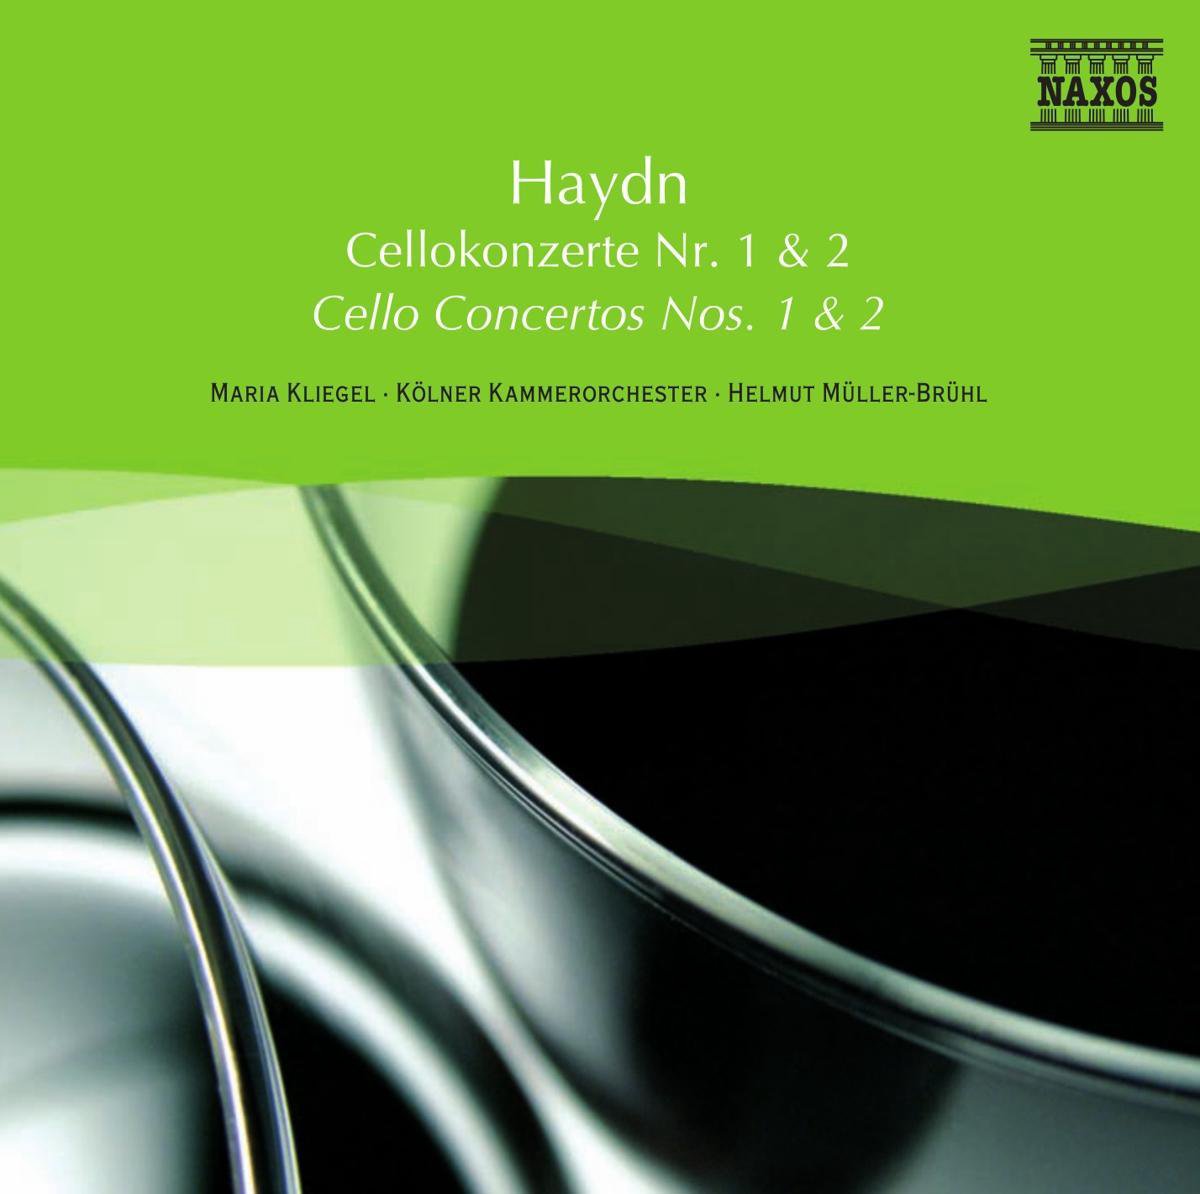 Haydn: Cello Concertos No.1&2 - Joseph Haydn